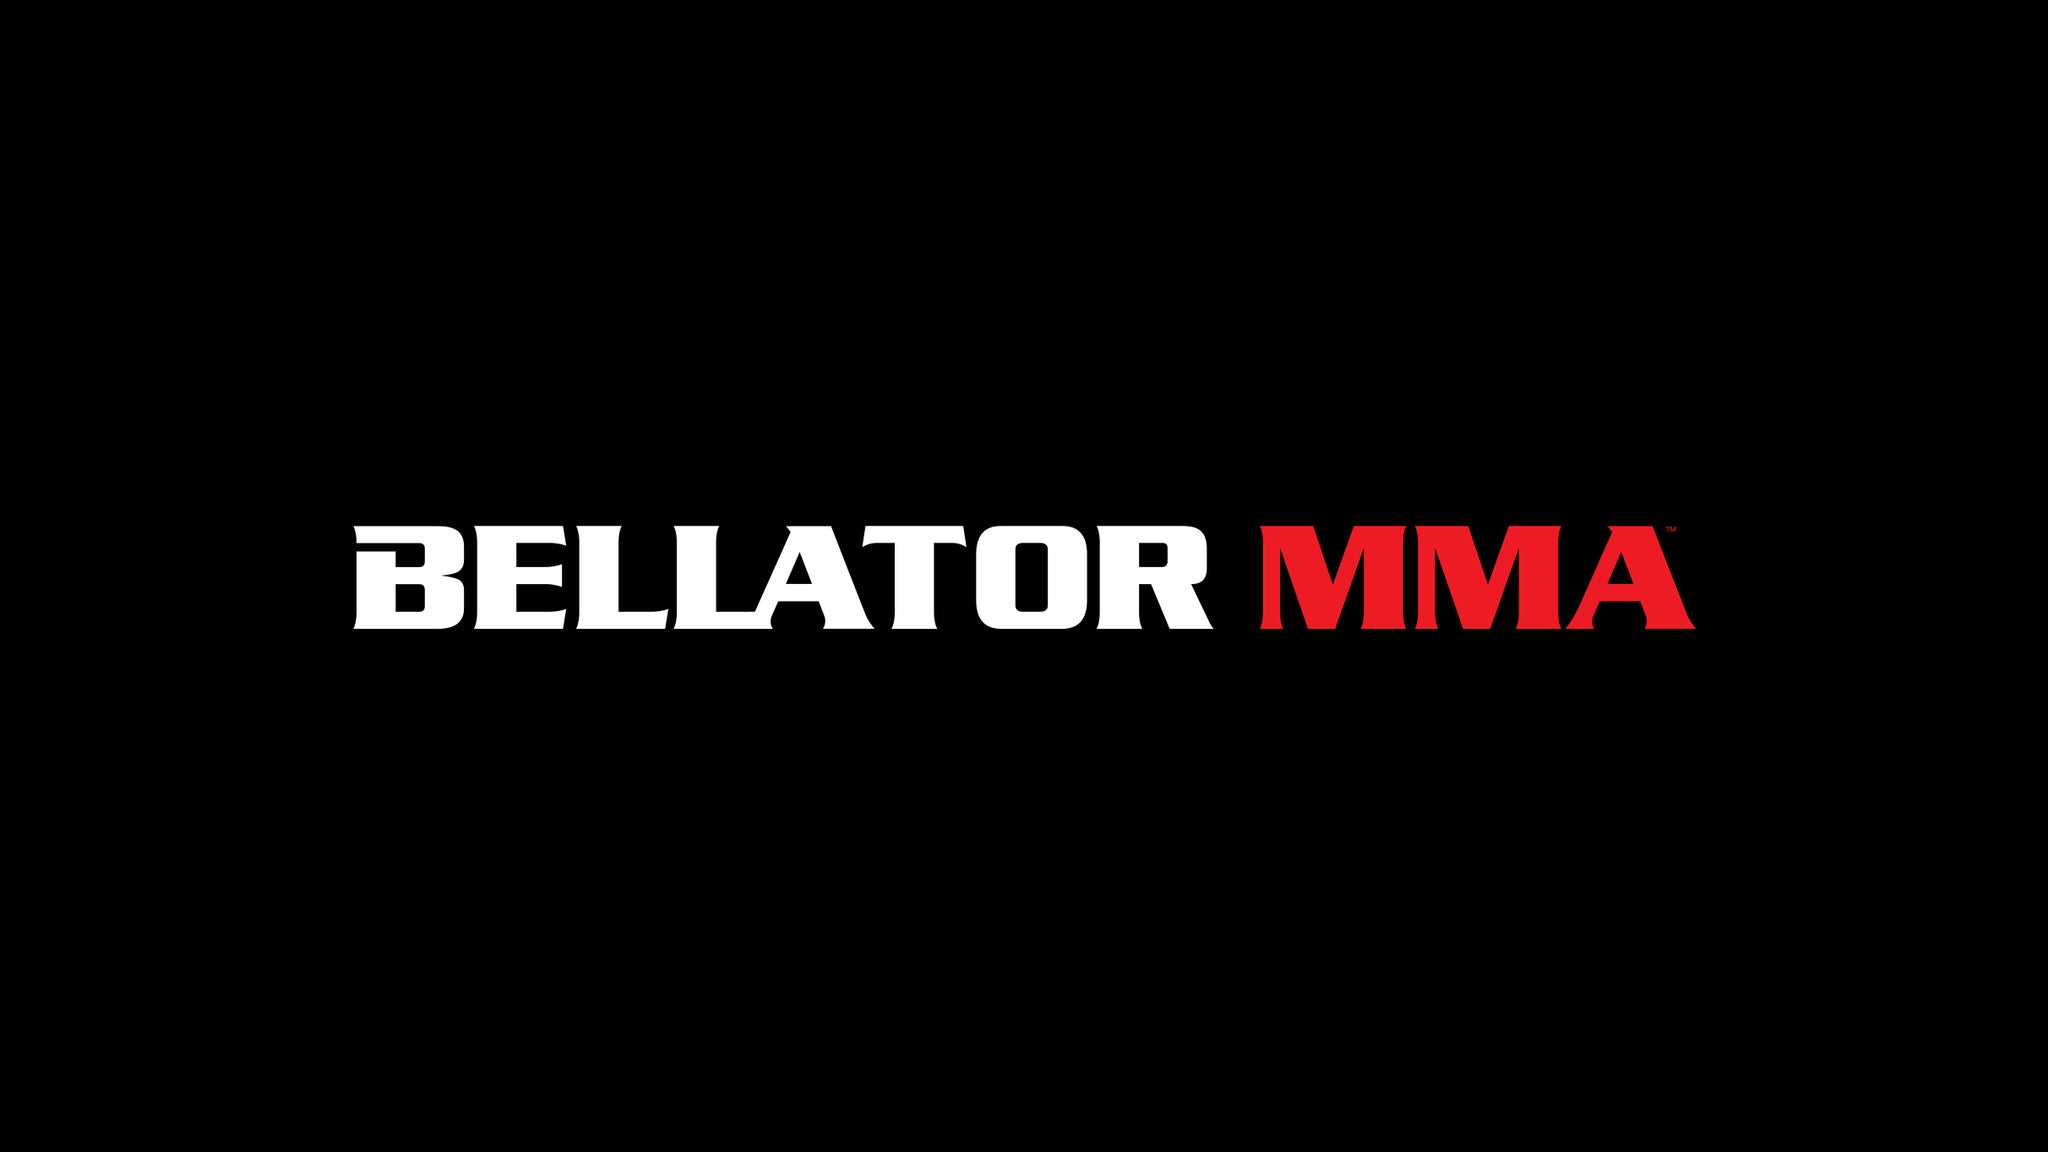 Bellator MMA 293 presale c0de for advance tickets in Temecula